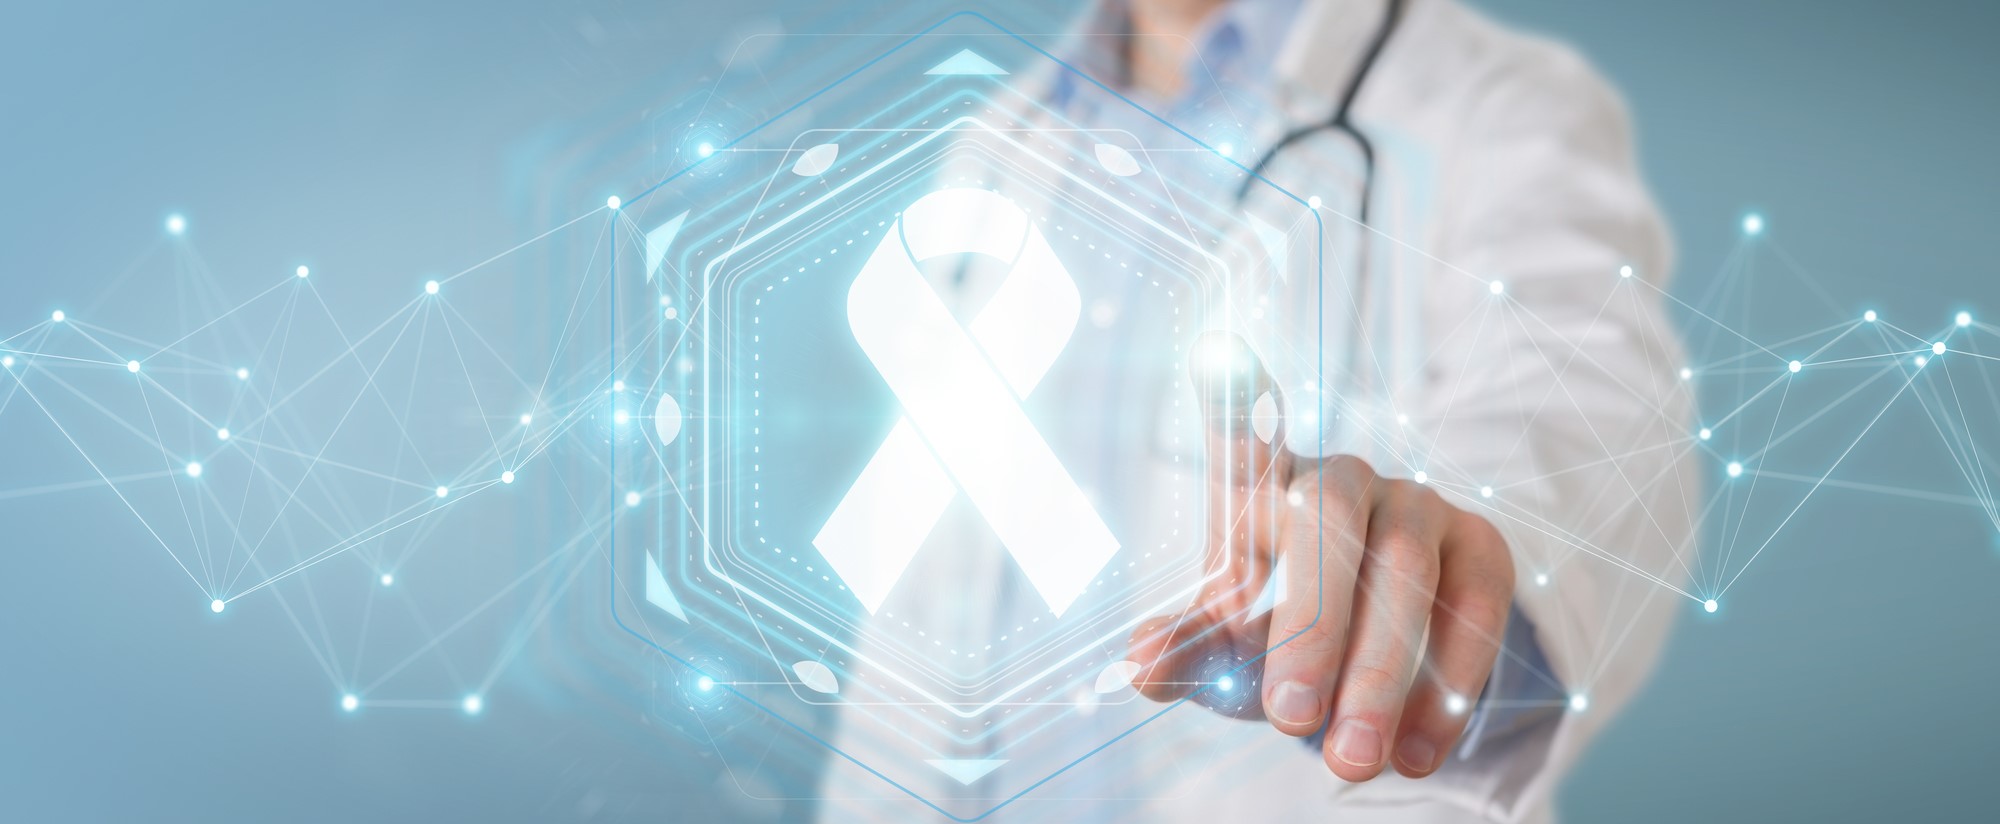 Xạ trị lập thể định vị thân bằng CyberKnife hỗ trợ điều trị ung thư phổi